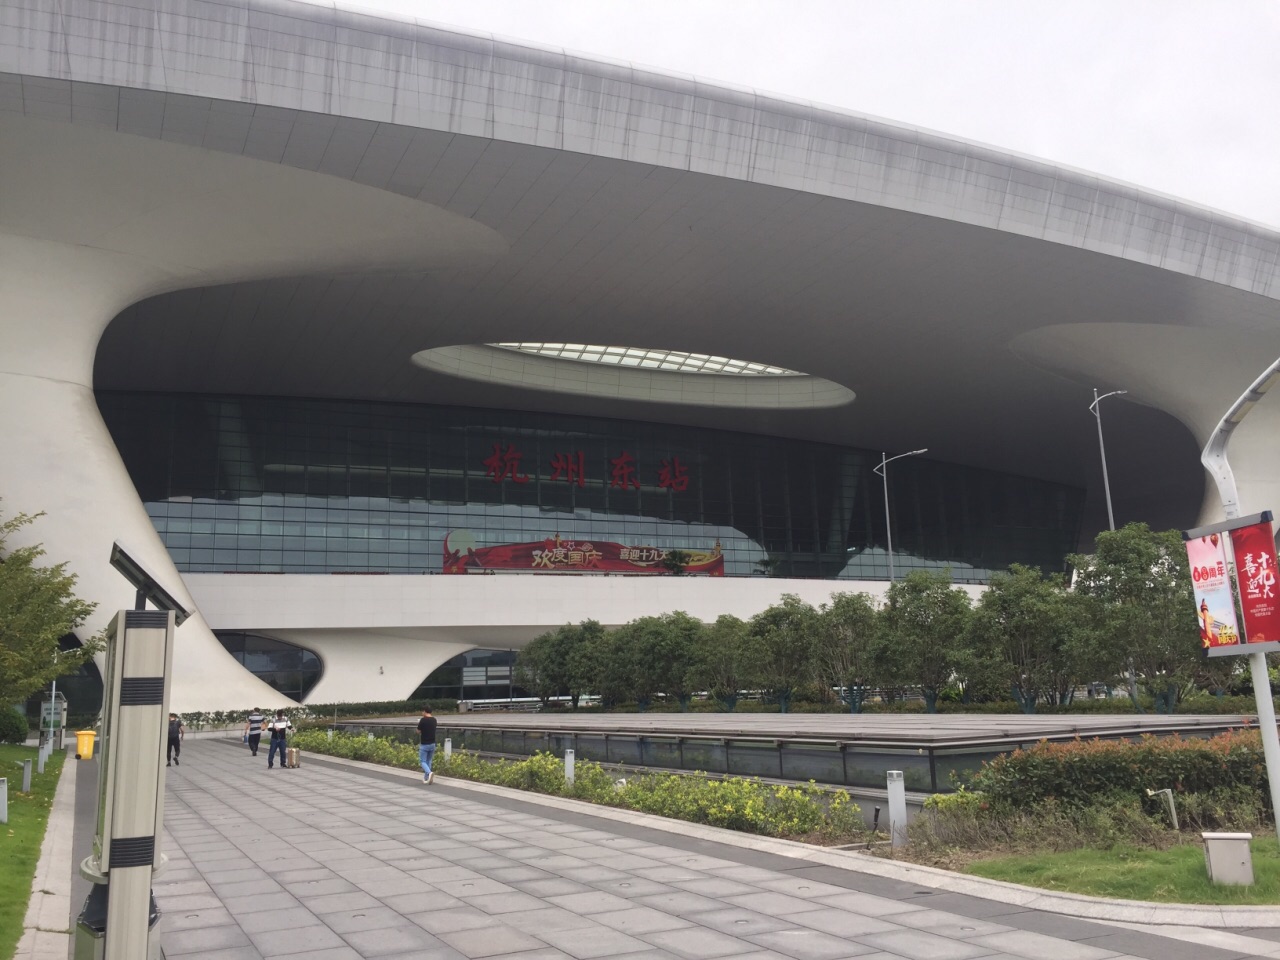 顺势而为的扭转：杭州东站花园国际 / goa大象设计 | 建筑学院